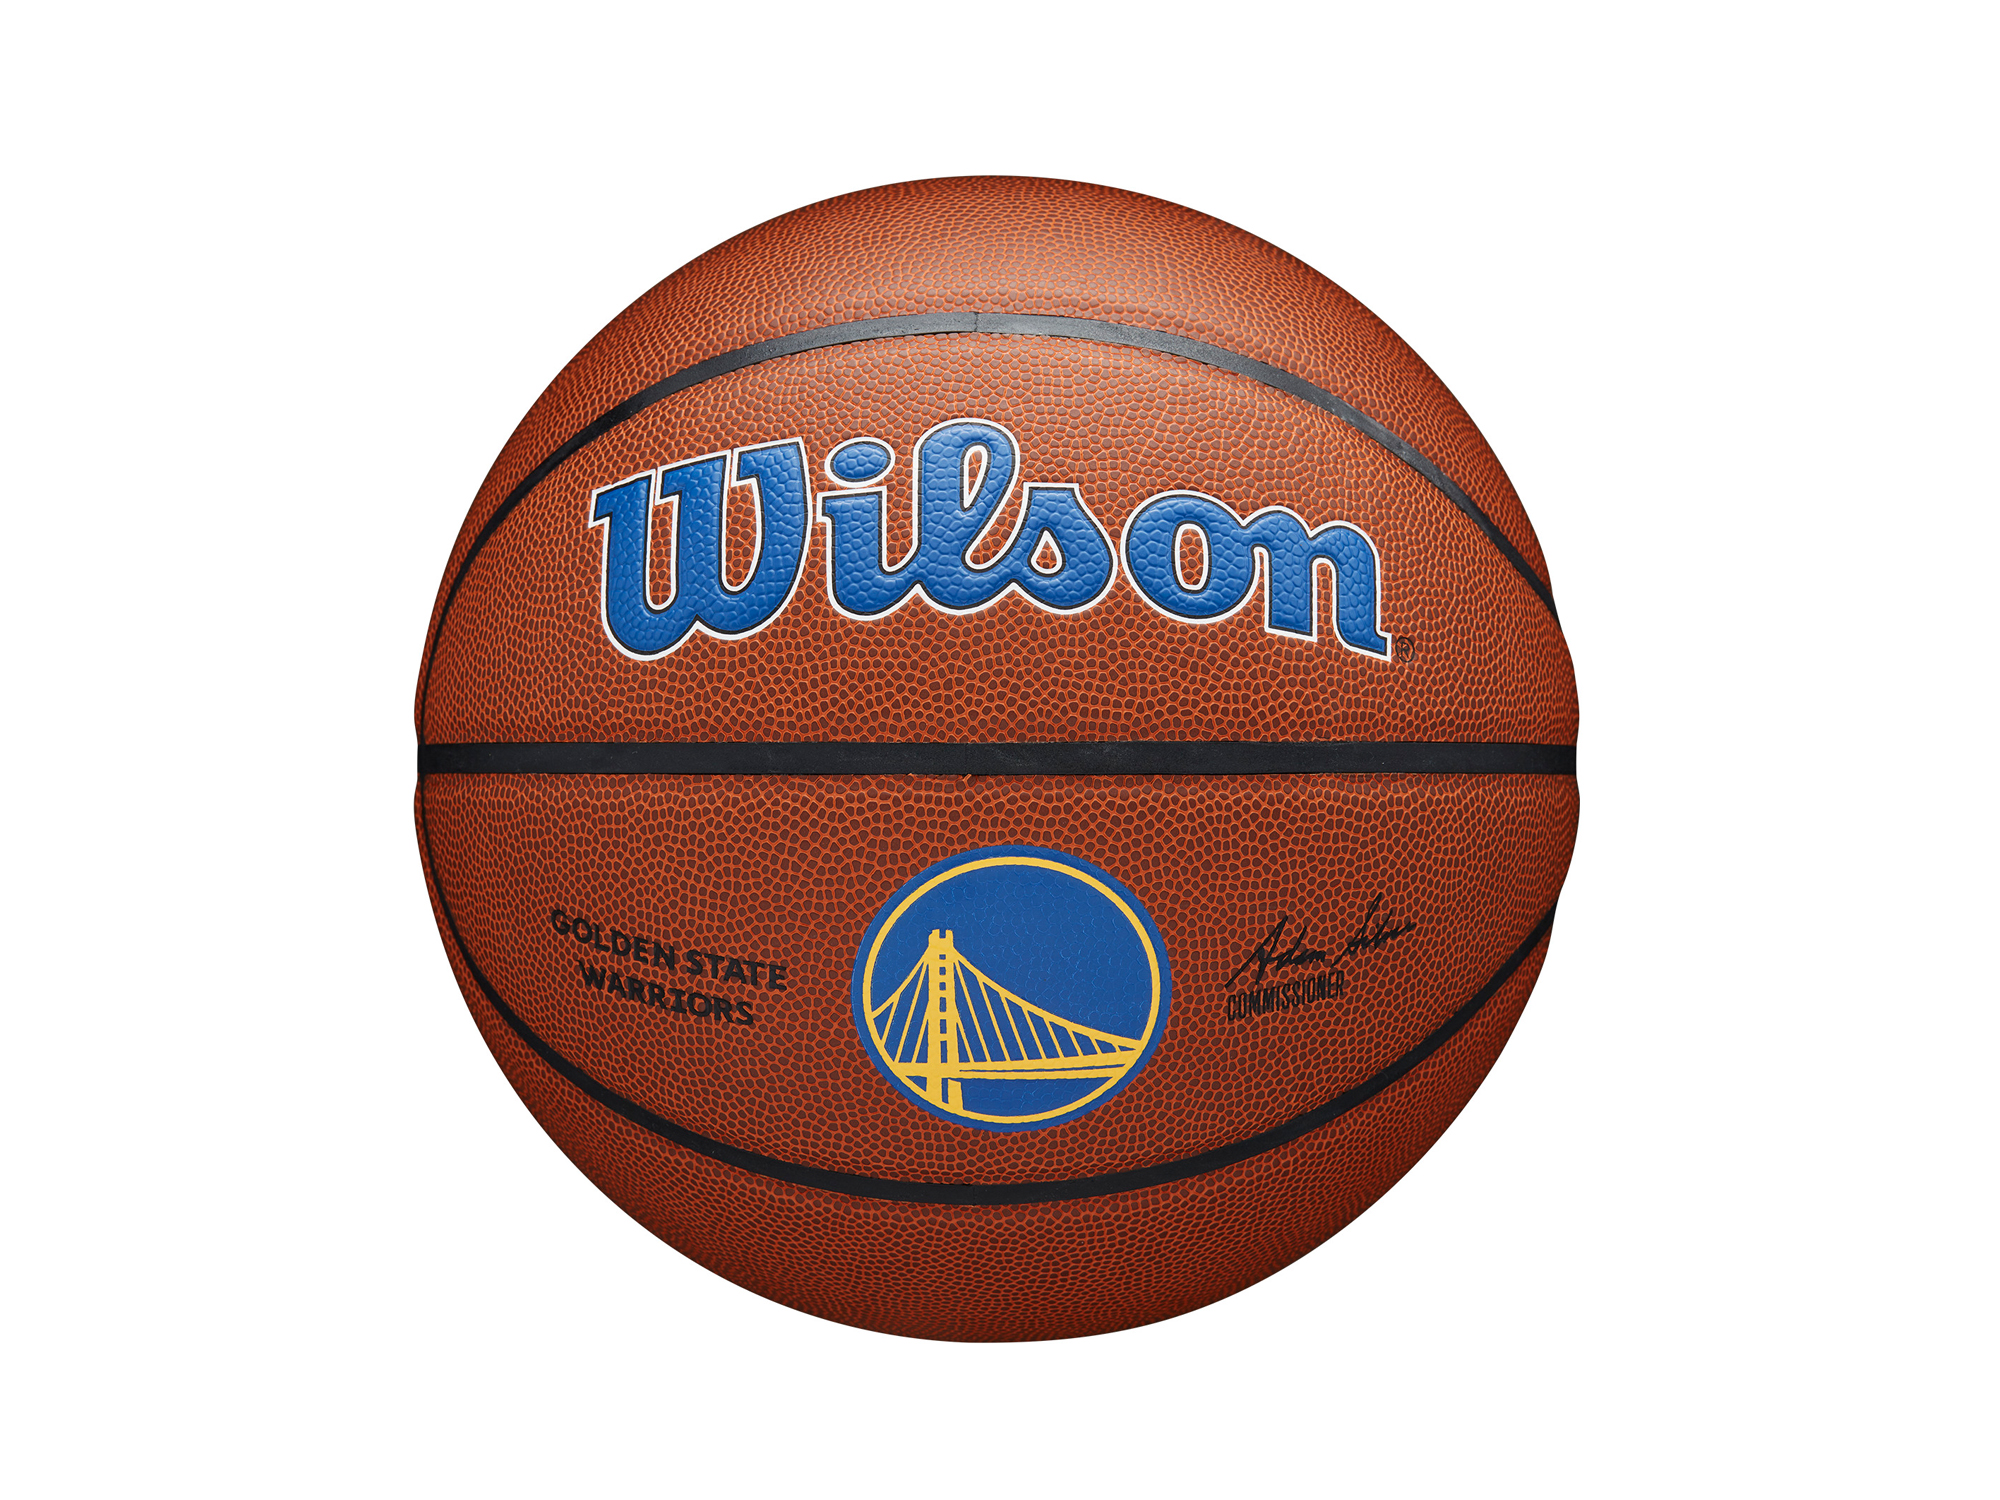 Wilson Golden State Warriors NBA Team Alliance Basketball